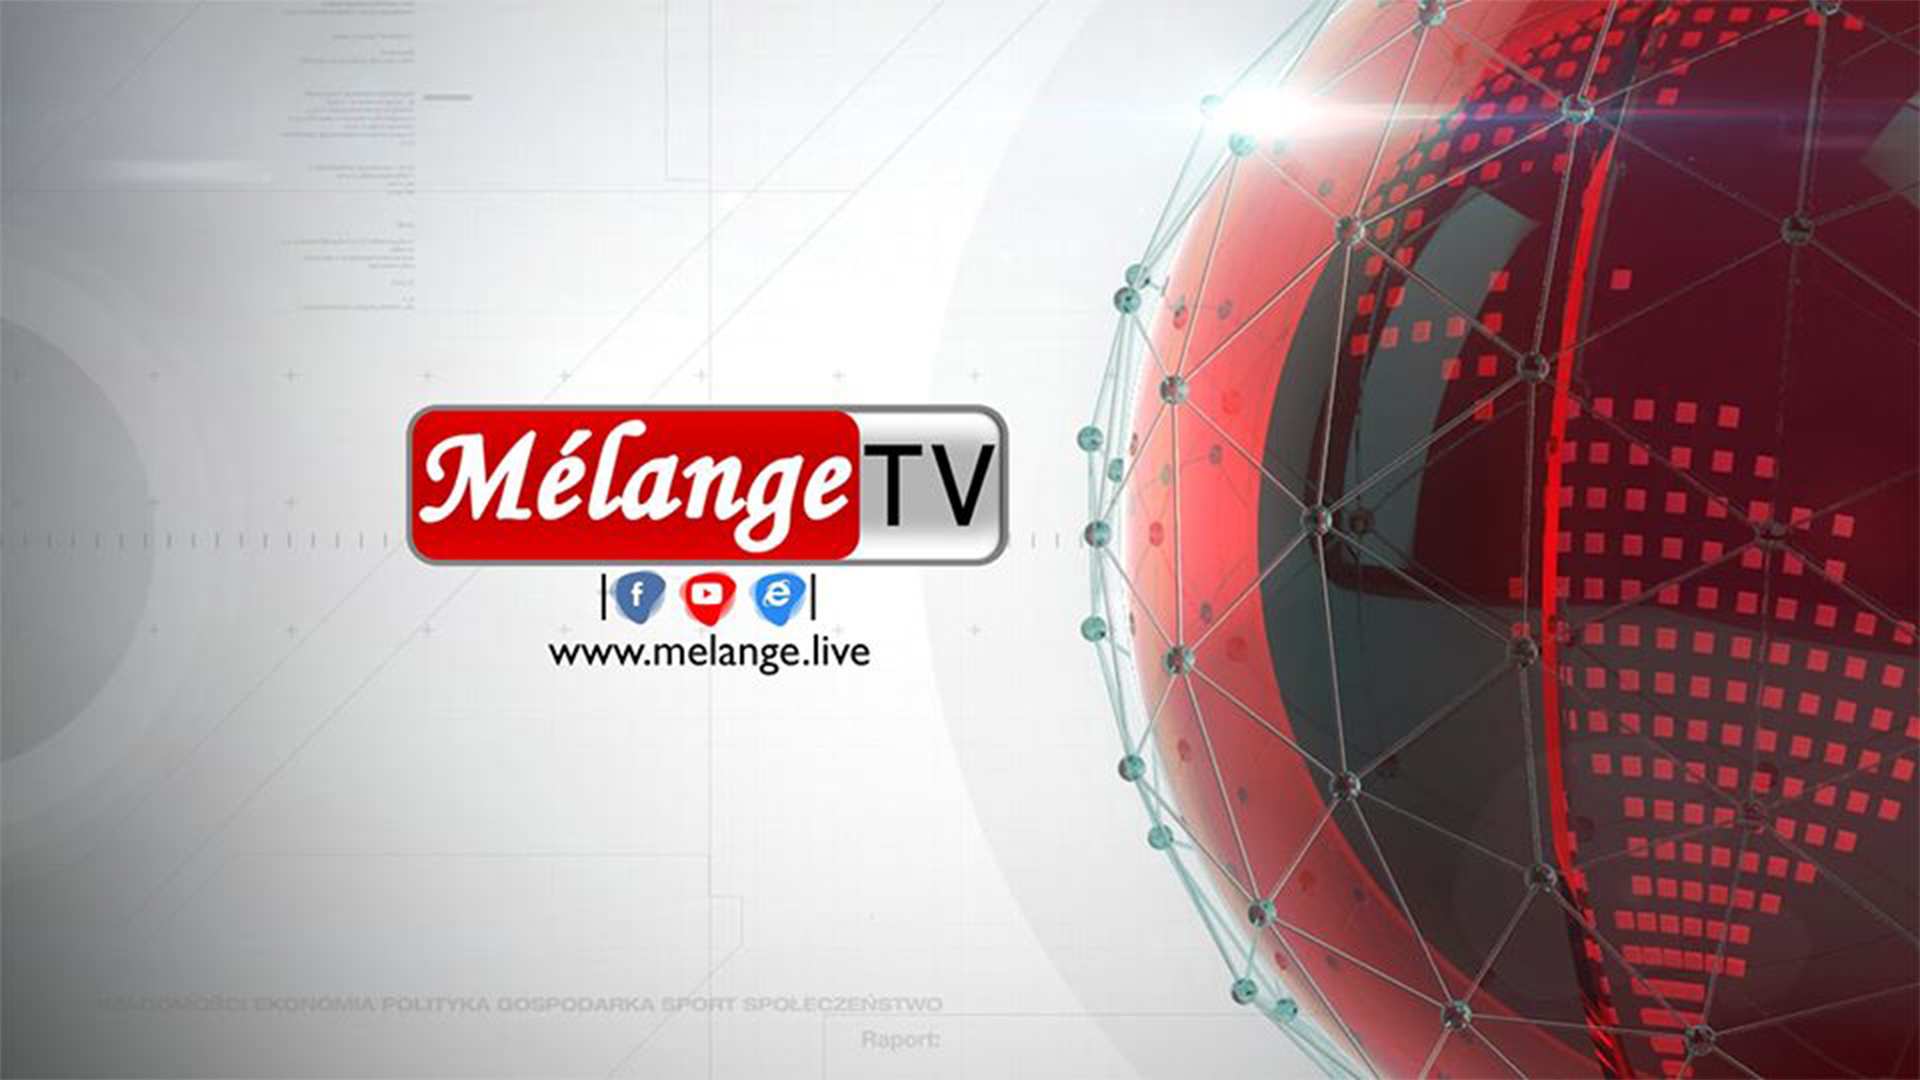 Melange TV